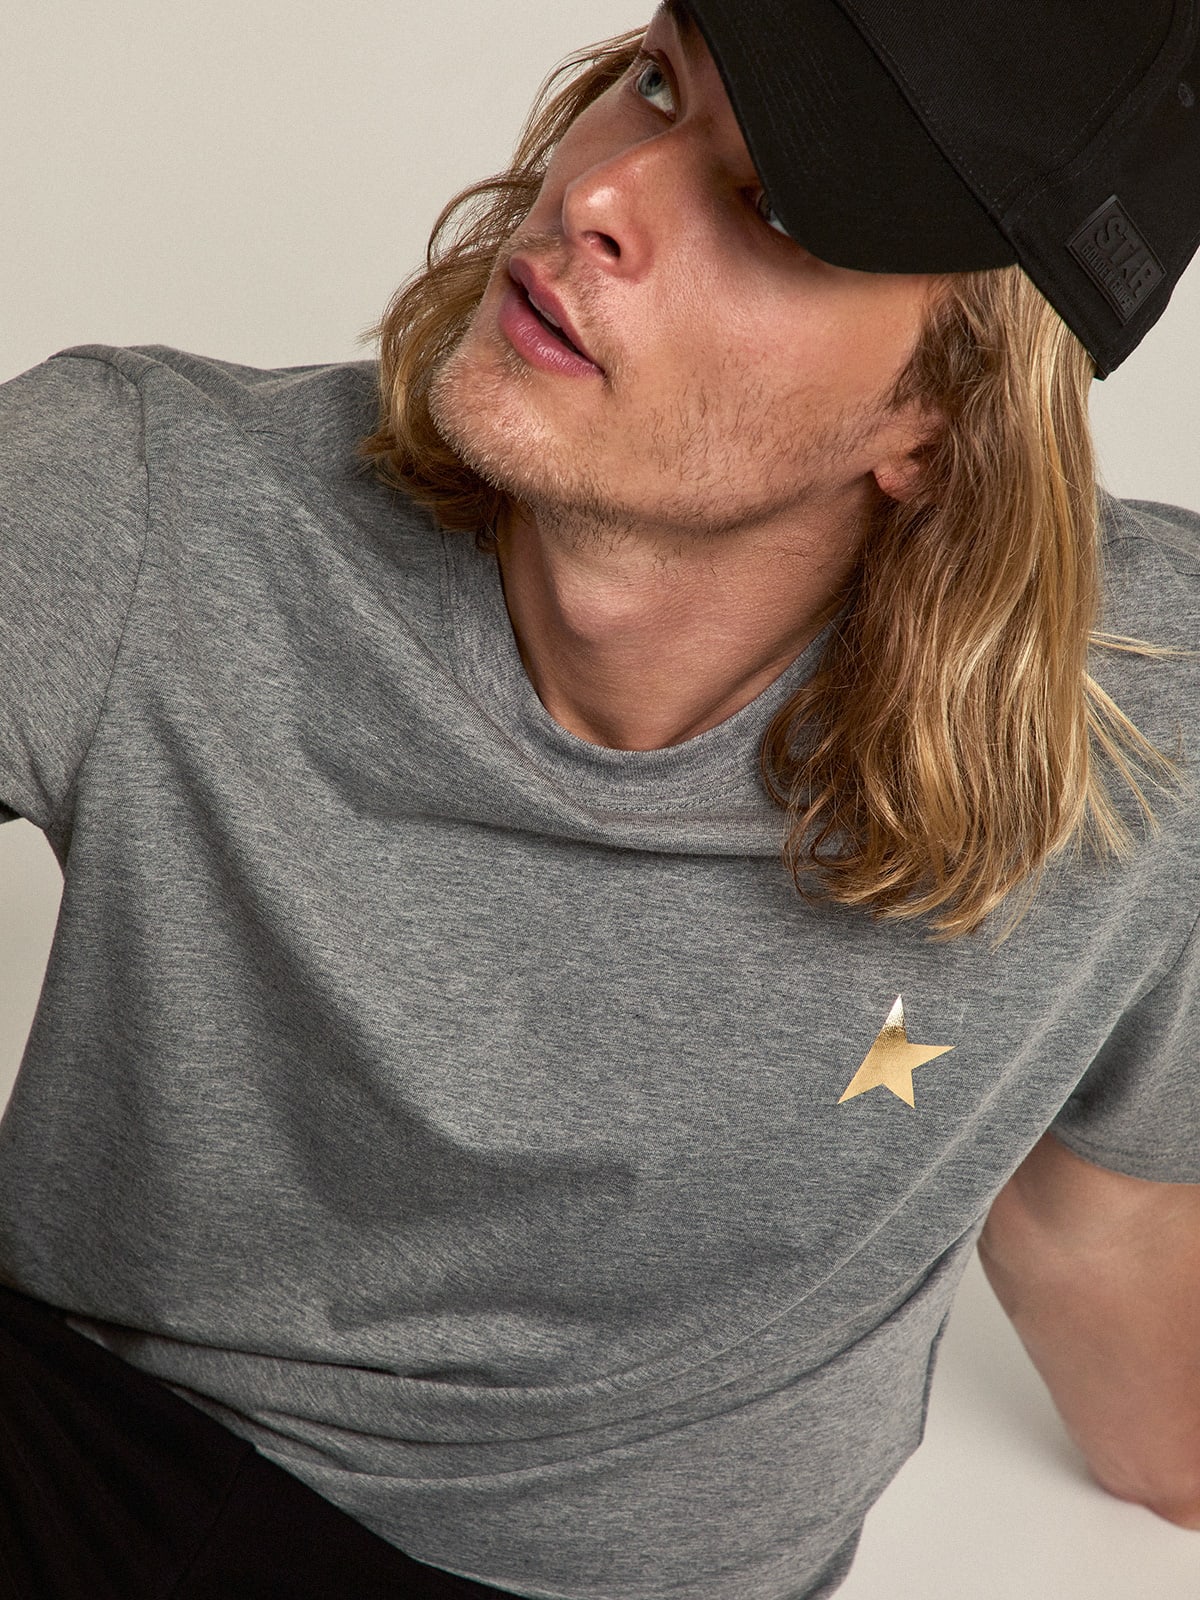 Golden Goose - T-shirt collection Star gris chiné avec étoile dorée contrastée sur le devant in 